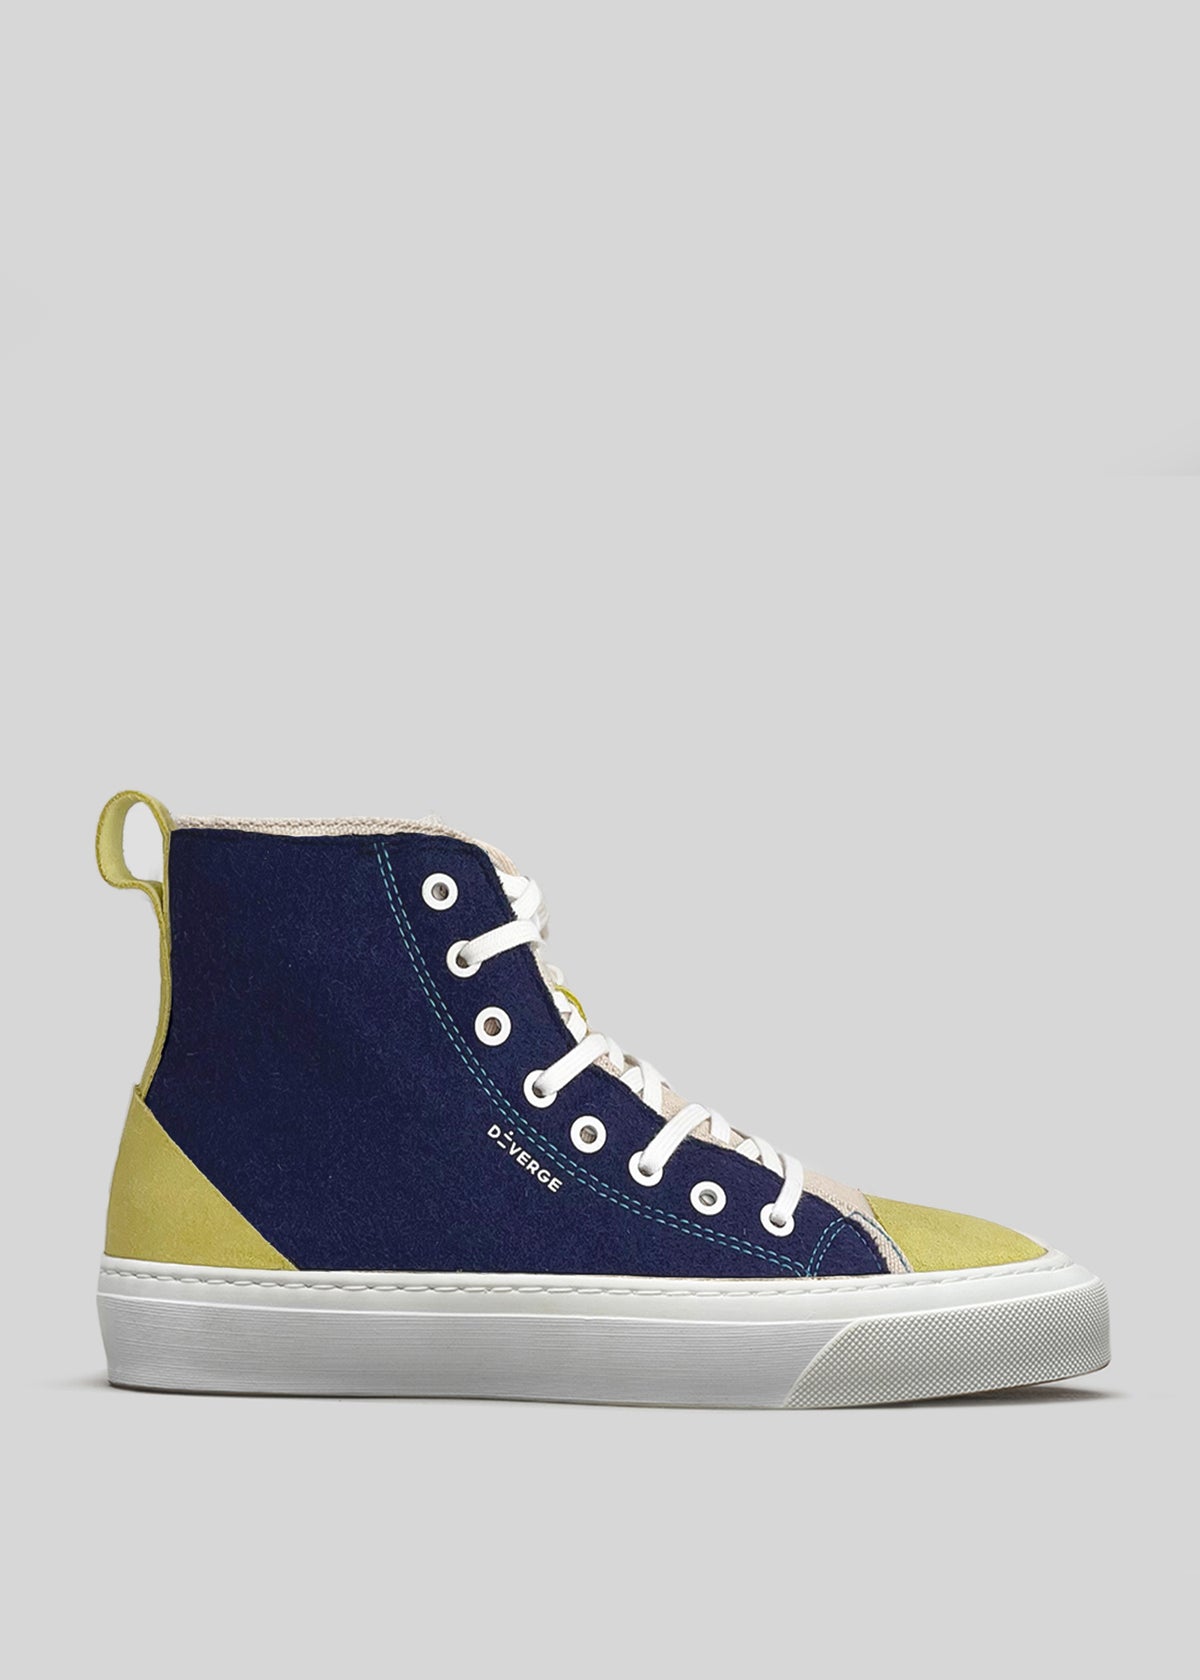 Sneaker high-top in tela DiVERGE X BUREL  con blocchi di colore blu notte, lacci bianchi e suola in gomma bianca su sfondo grigio.